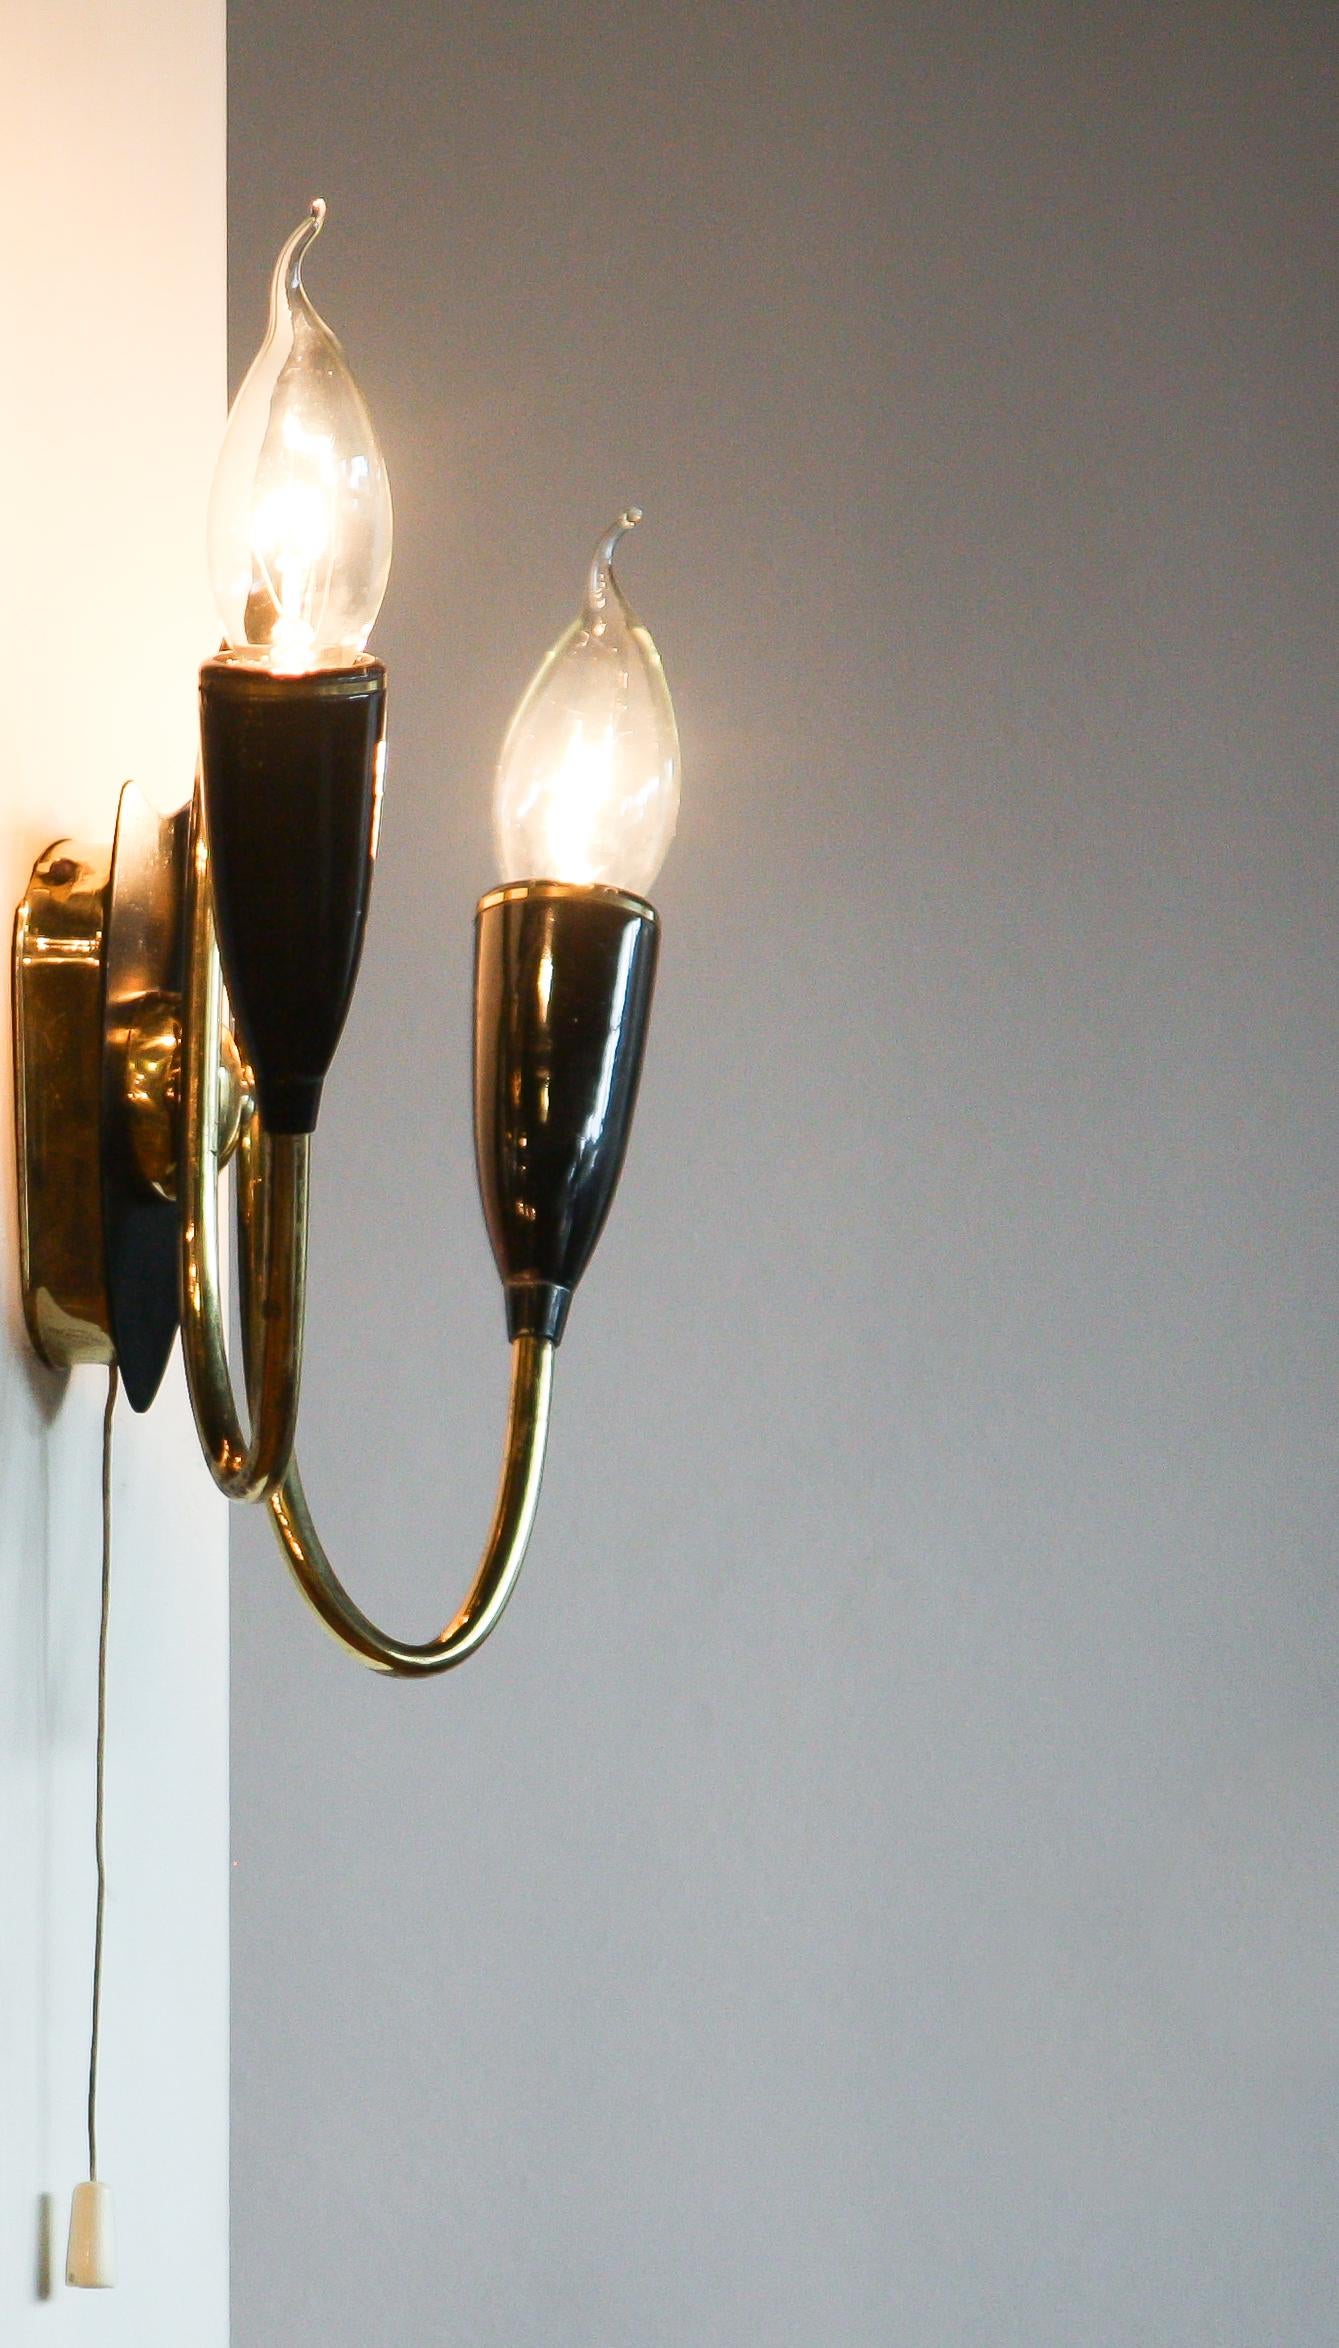 Schöne italienische Wandlampe aus Messing.
Die Lampe besteht aus zwei Messingarmen mit schwarzen Metallbefestigungen.
Es ist in einem guten und funktionierenden Zustand.
Zeitraum: 1950s.
Abmessungen: H 20 cm, B 18 cm, T 10 cm.